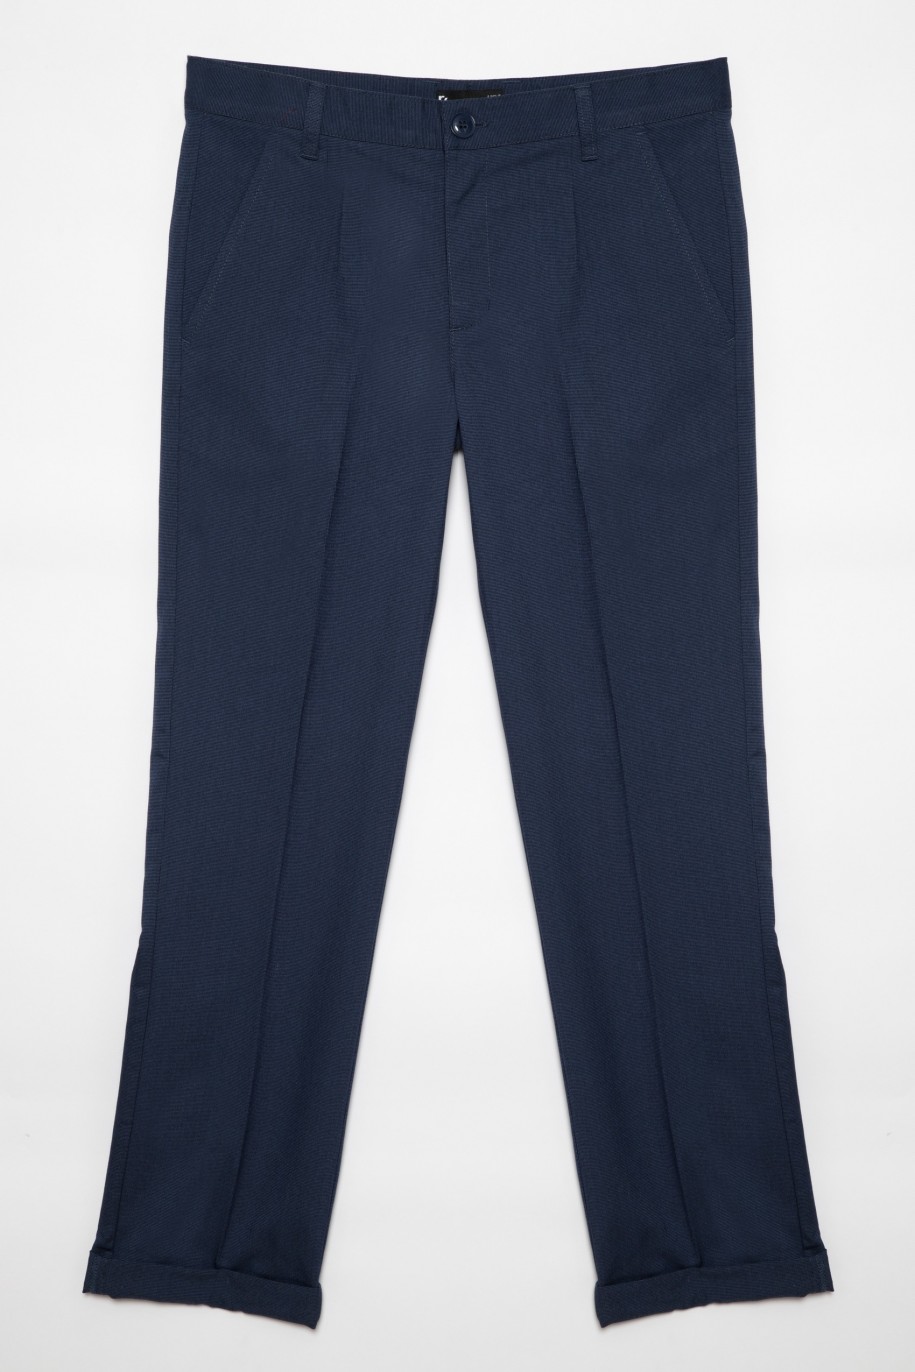 Eleganckie granatowe spodnie garniturowe dla chłopaka - 26475